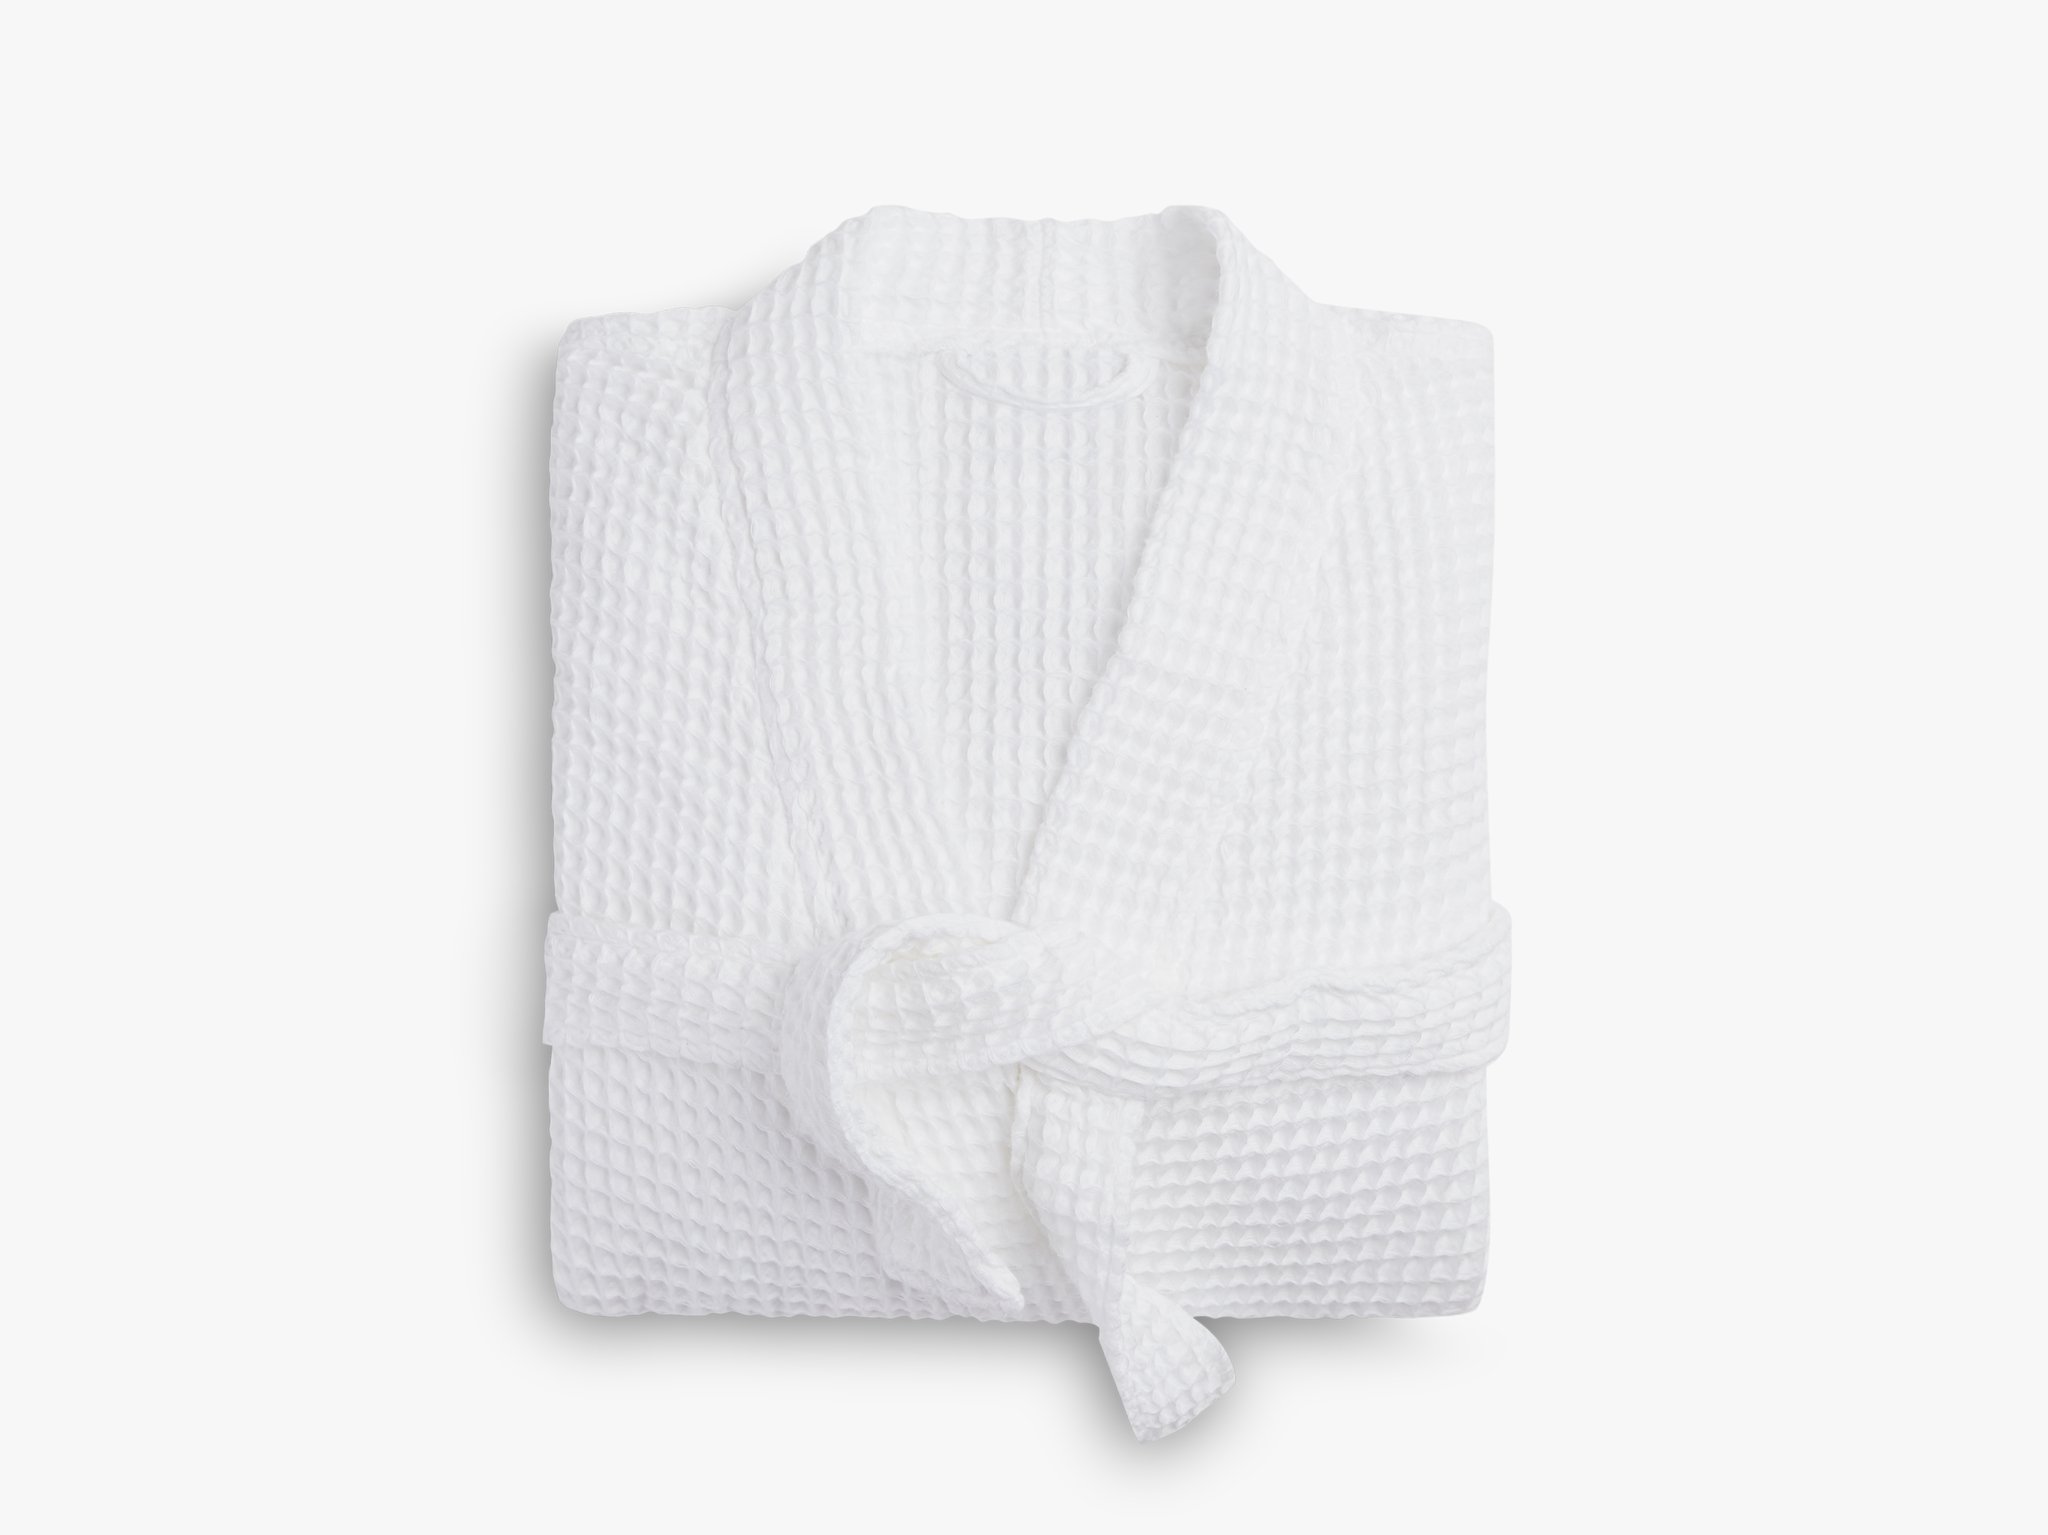 Towel Wrap Towels :: Waffle Wraps :: White Waffle Spa, Bath Wrap -  Wholesale bathrobes, Spa robes, Kids robes, Cotton robes, Spa Slippers,  Wholesale Towels